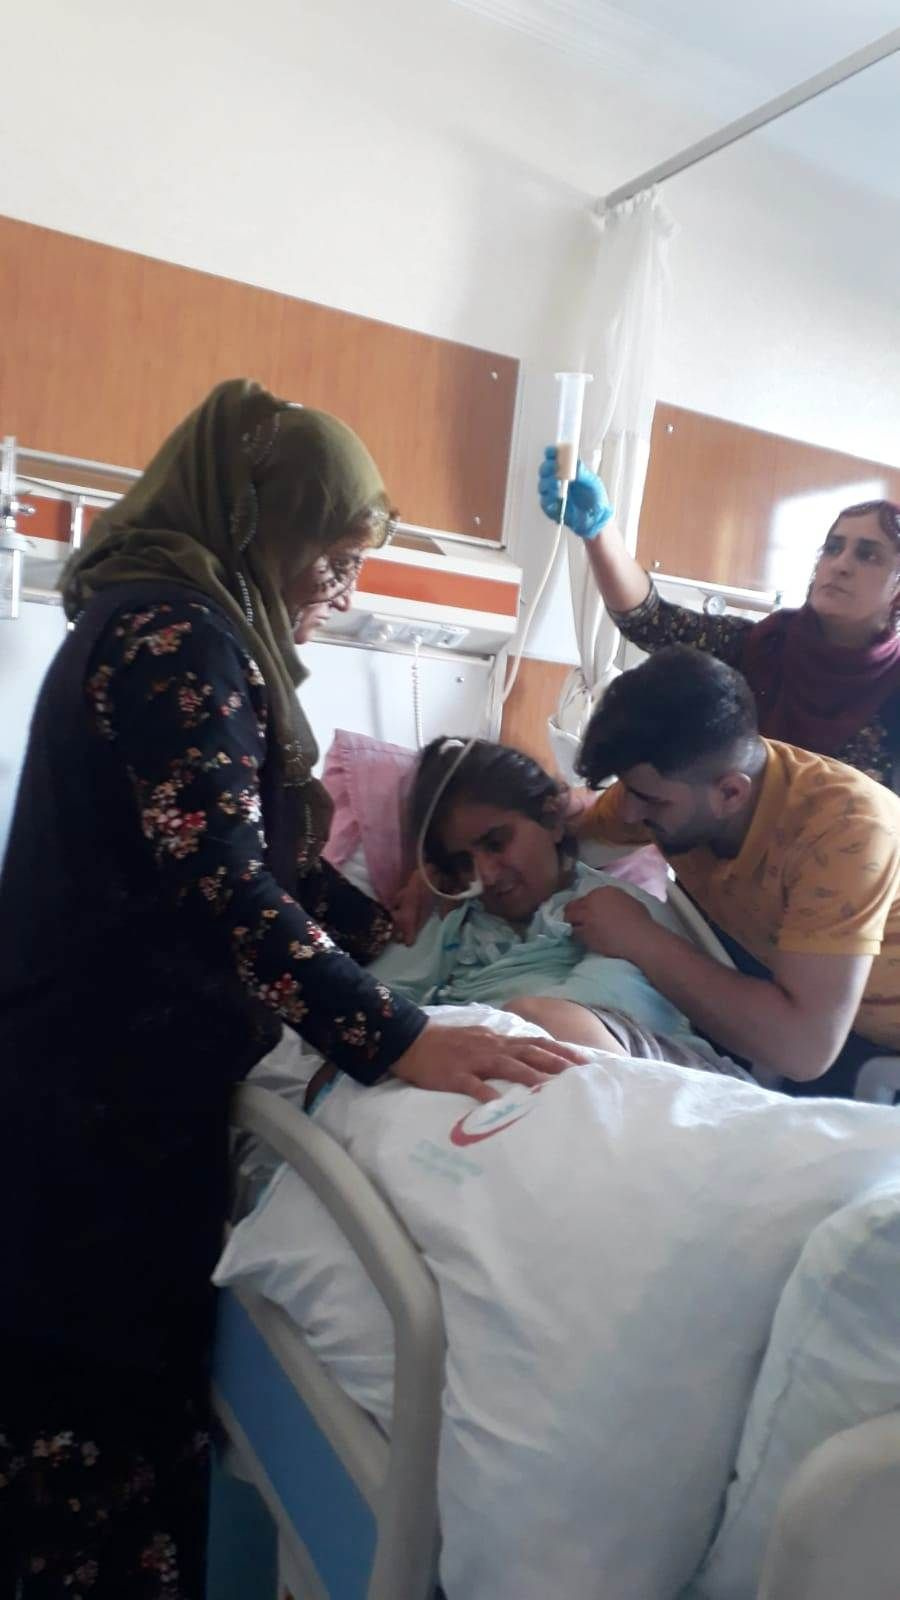 Mardin'de merdivenden düştü denilen kadınla ilgili gerçek hastanede ortaya çıktı